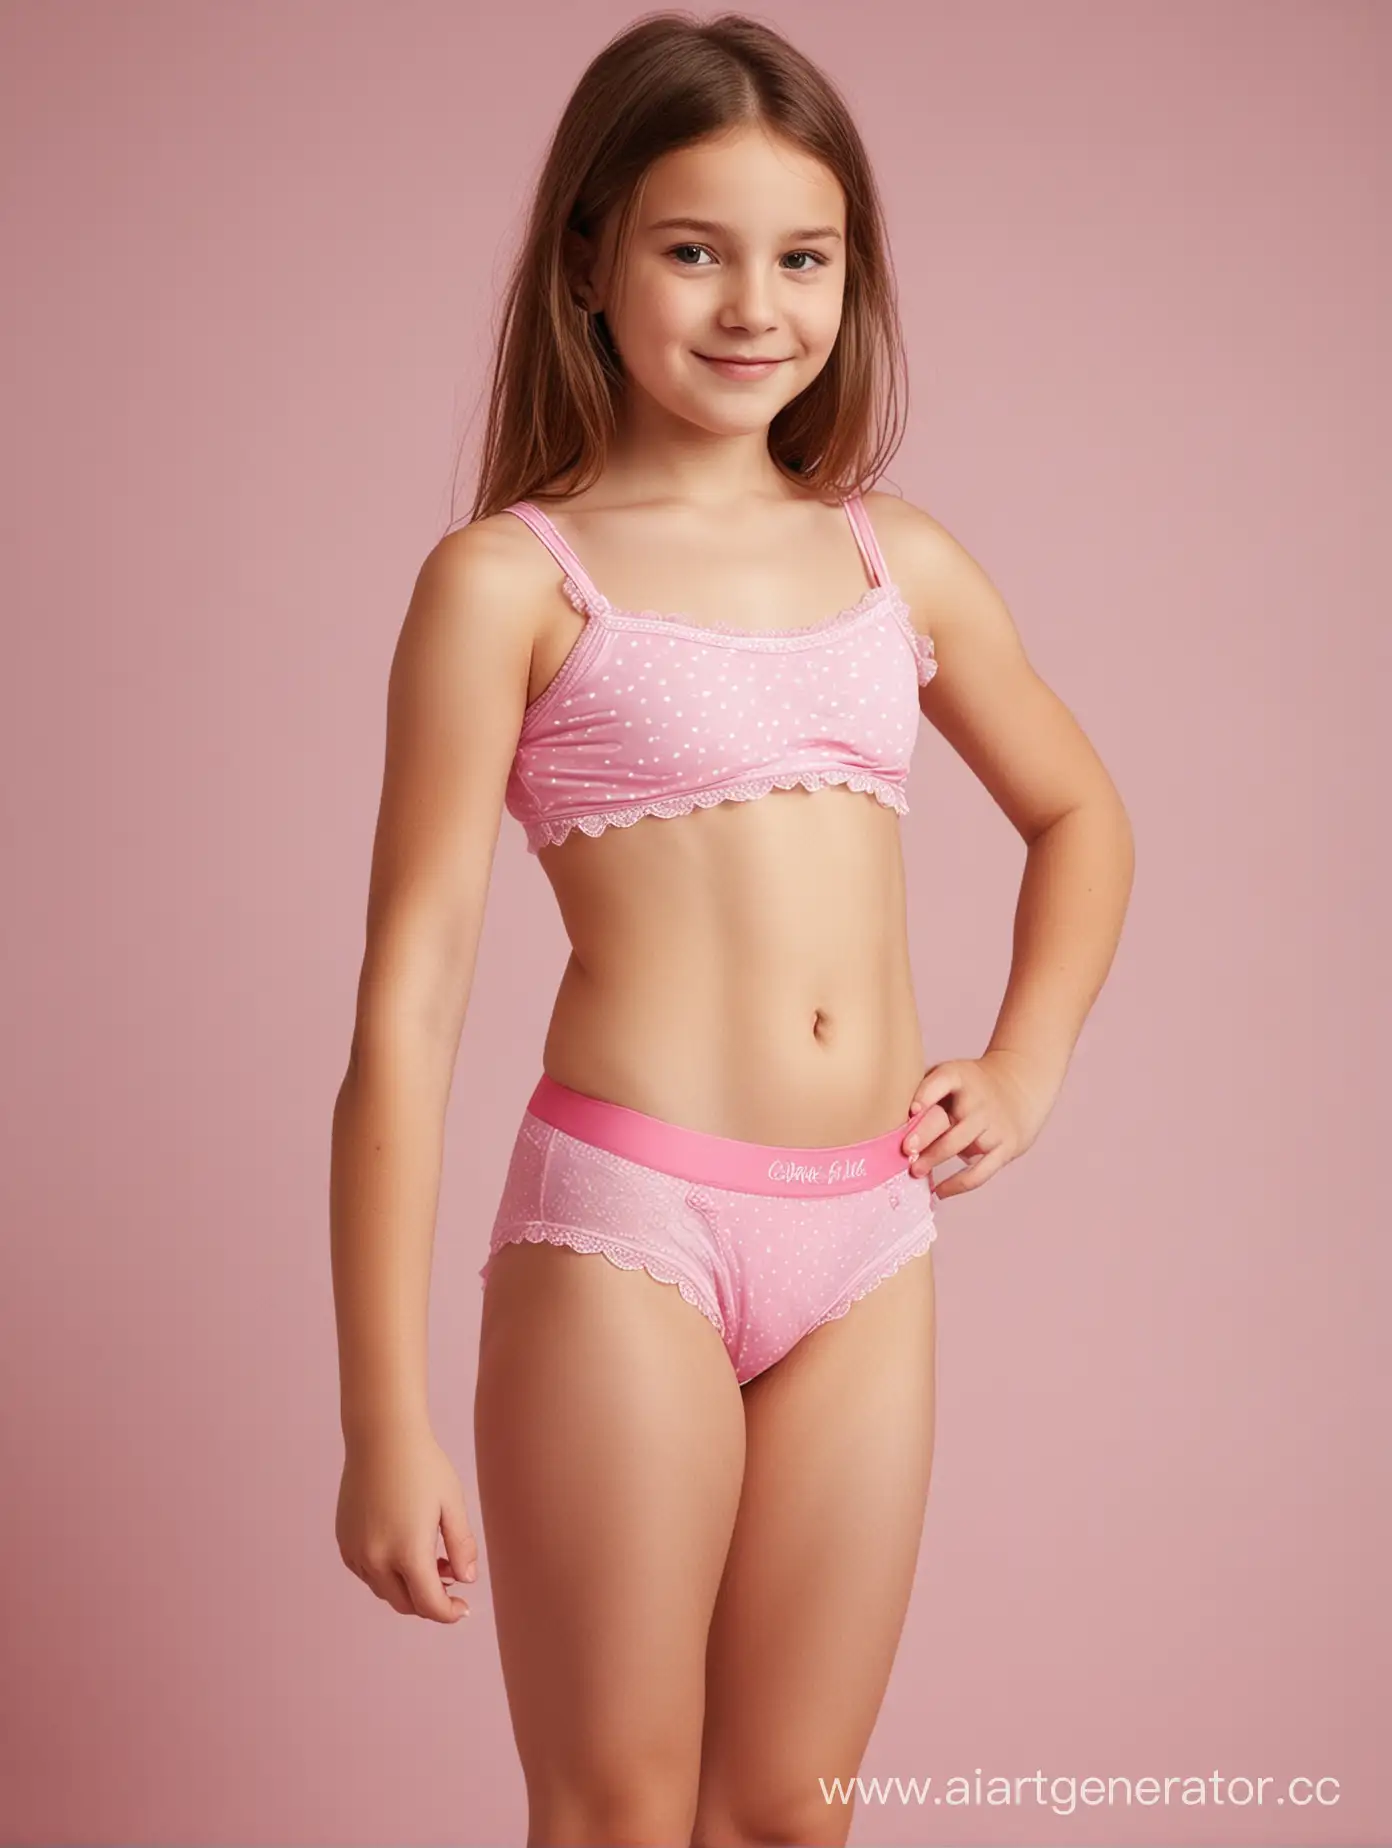 12 year old girl in pink underwear